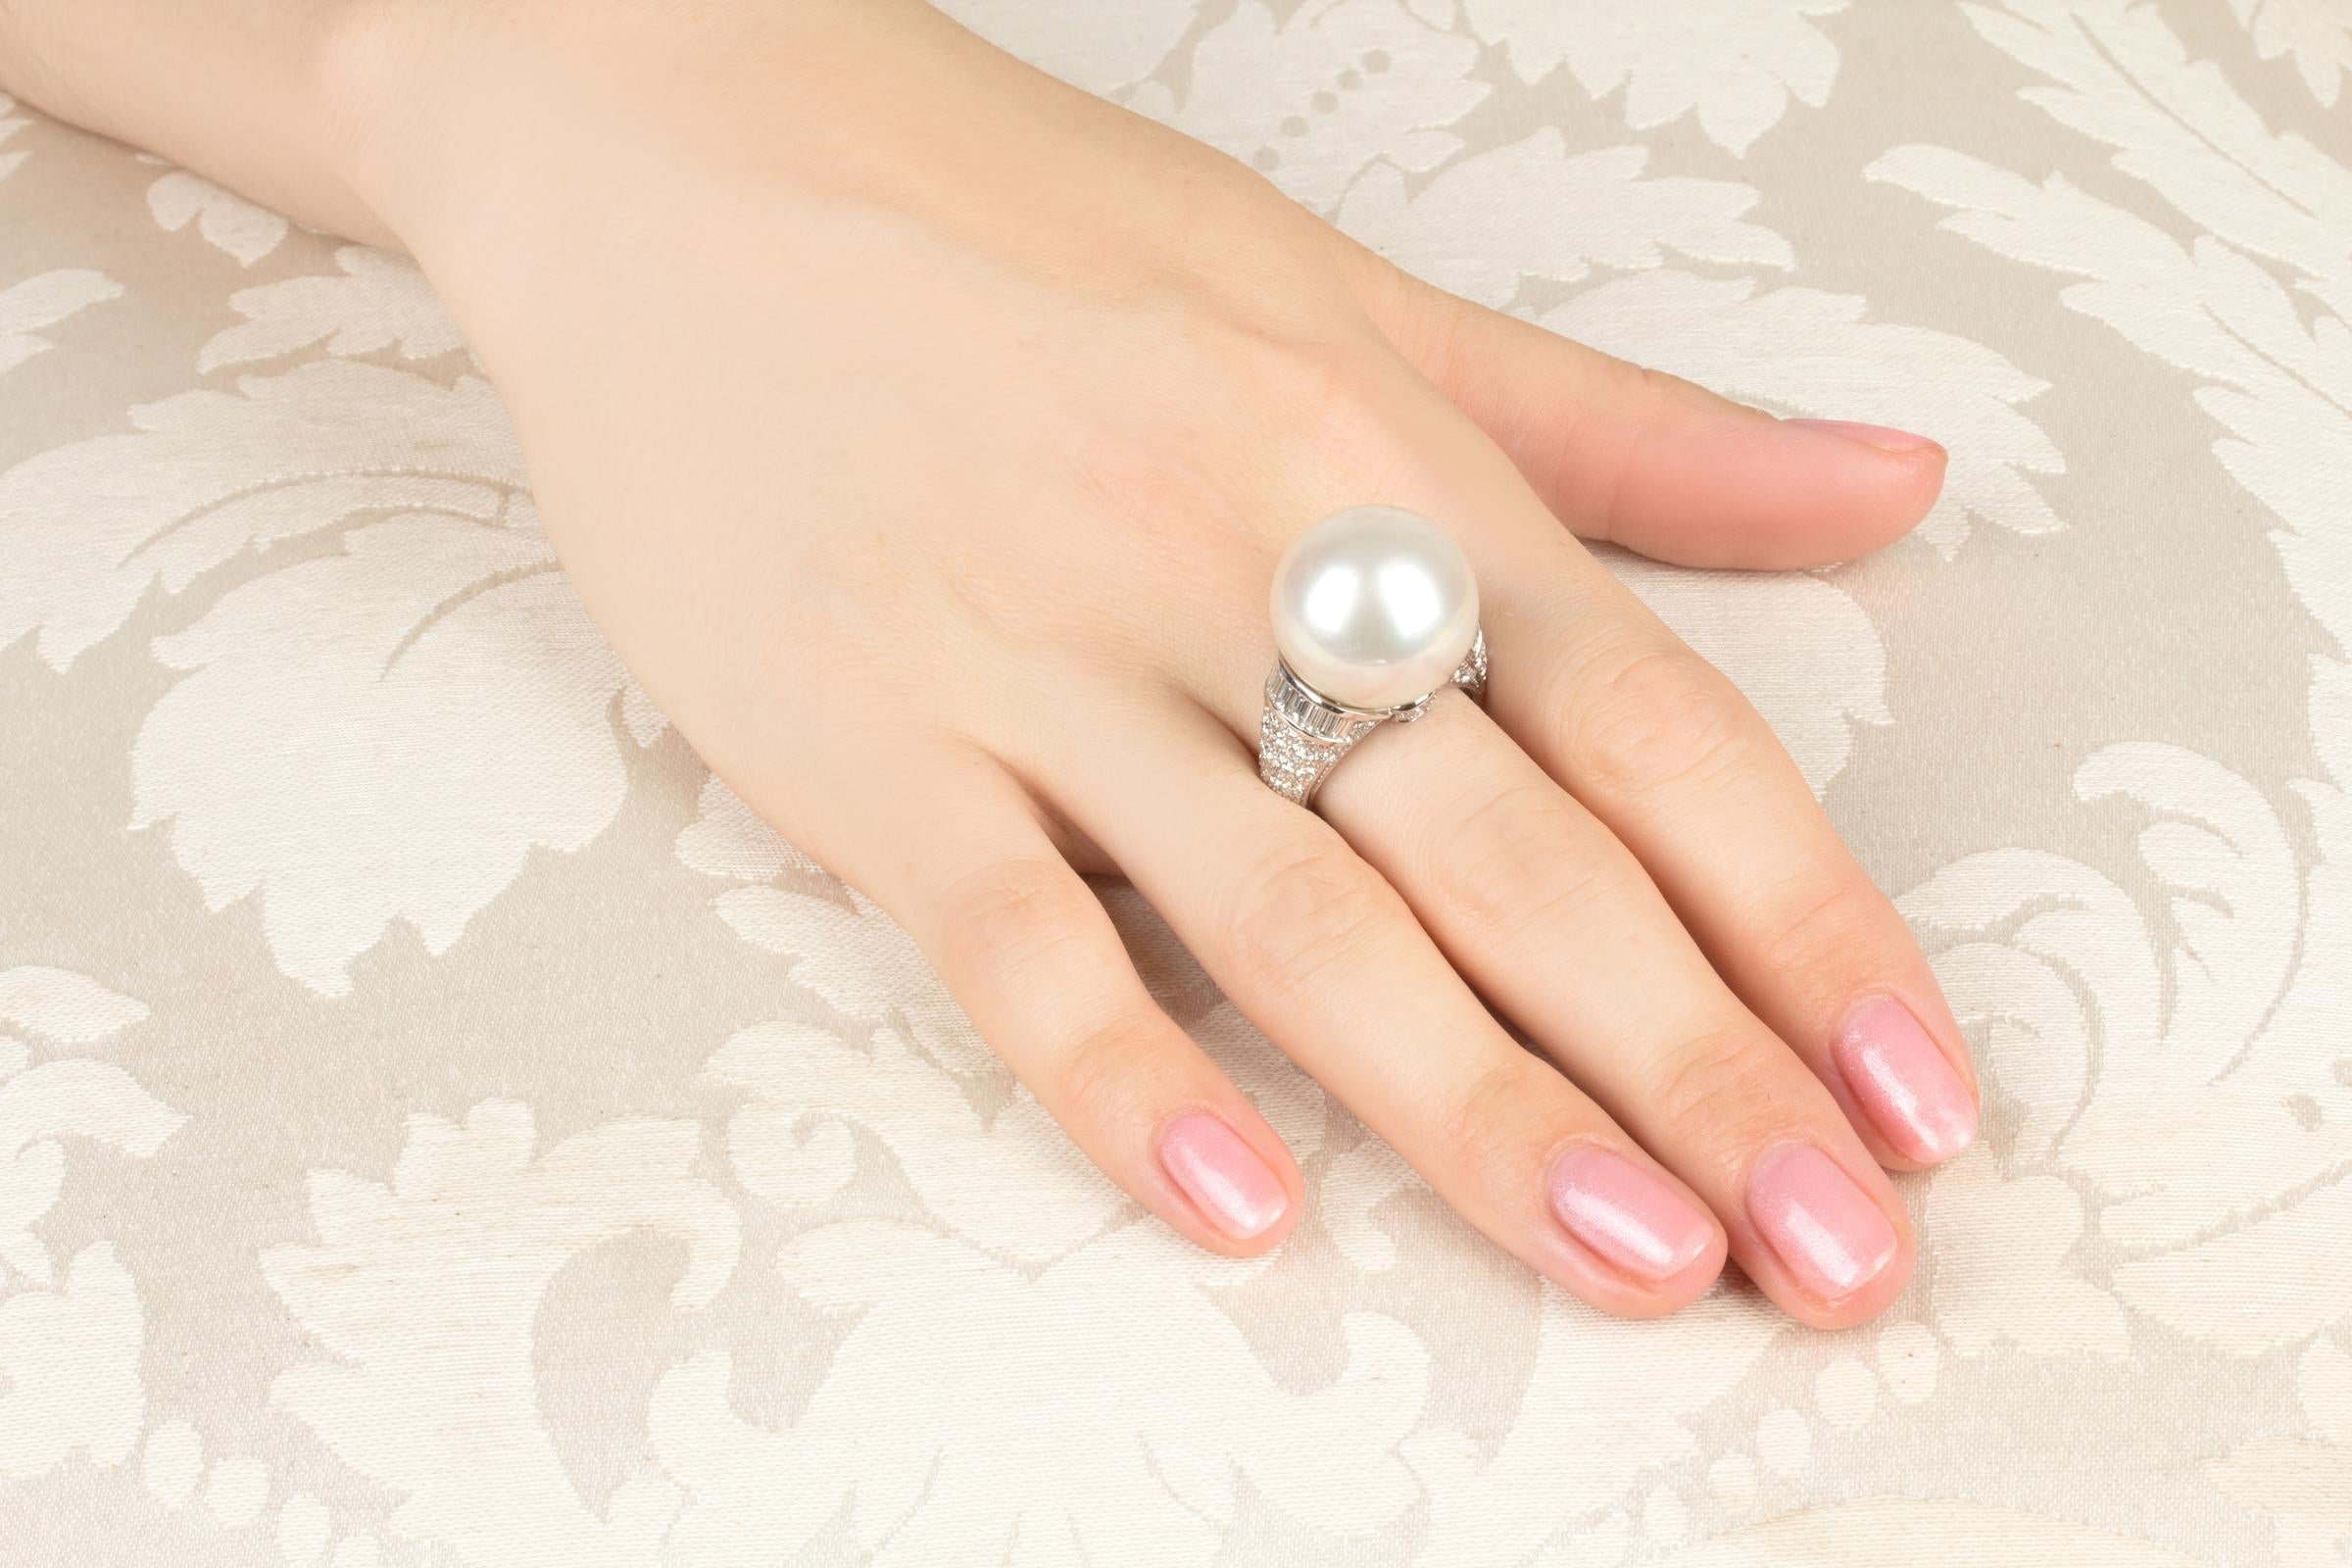 Dieser Cocktailring aus Südseeperlen und Diamanten zeichnet sich durch eine voluminöse Perle in Edelsteinqualität von 18 mm Durchmesser aus. Die Perle ist naturbelassen. Er hat ein feines Perlmutt und seine natürliche Farbe und sein Glanz wurden in